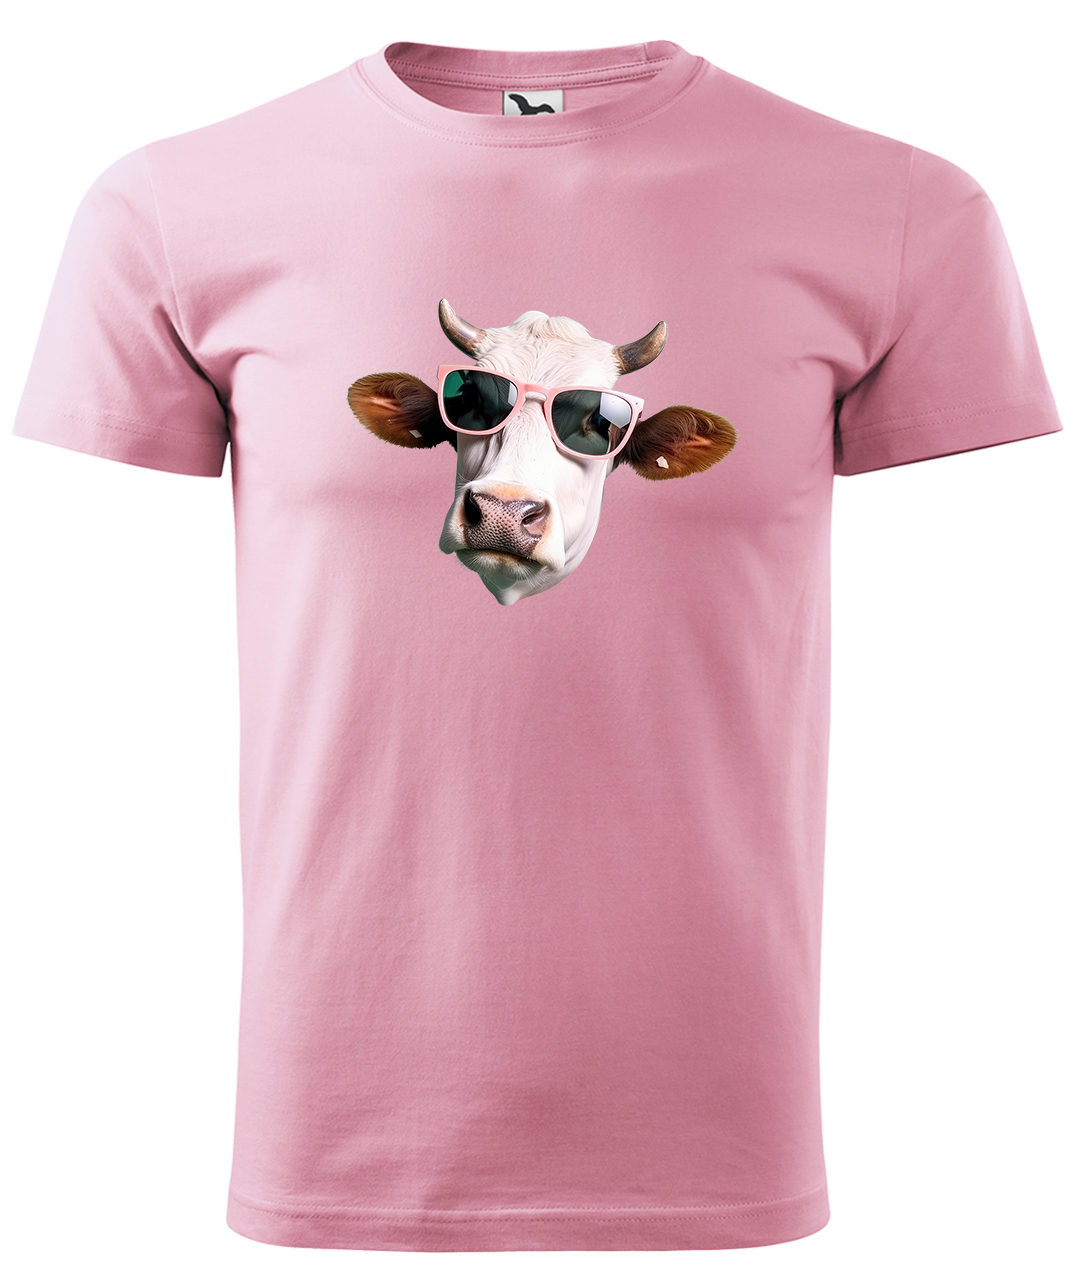 Dětské tričko s krávou - Kráva v brýlích Velikost: 4 roky / 110 cm, Barva: Růžová (30), Délka rukávu: Krátký rukáv